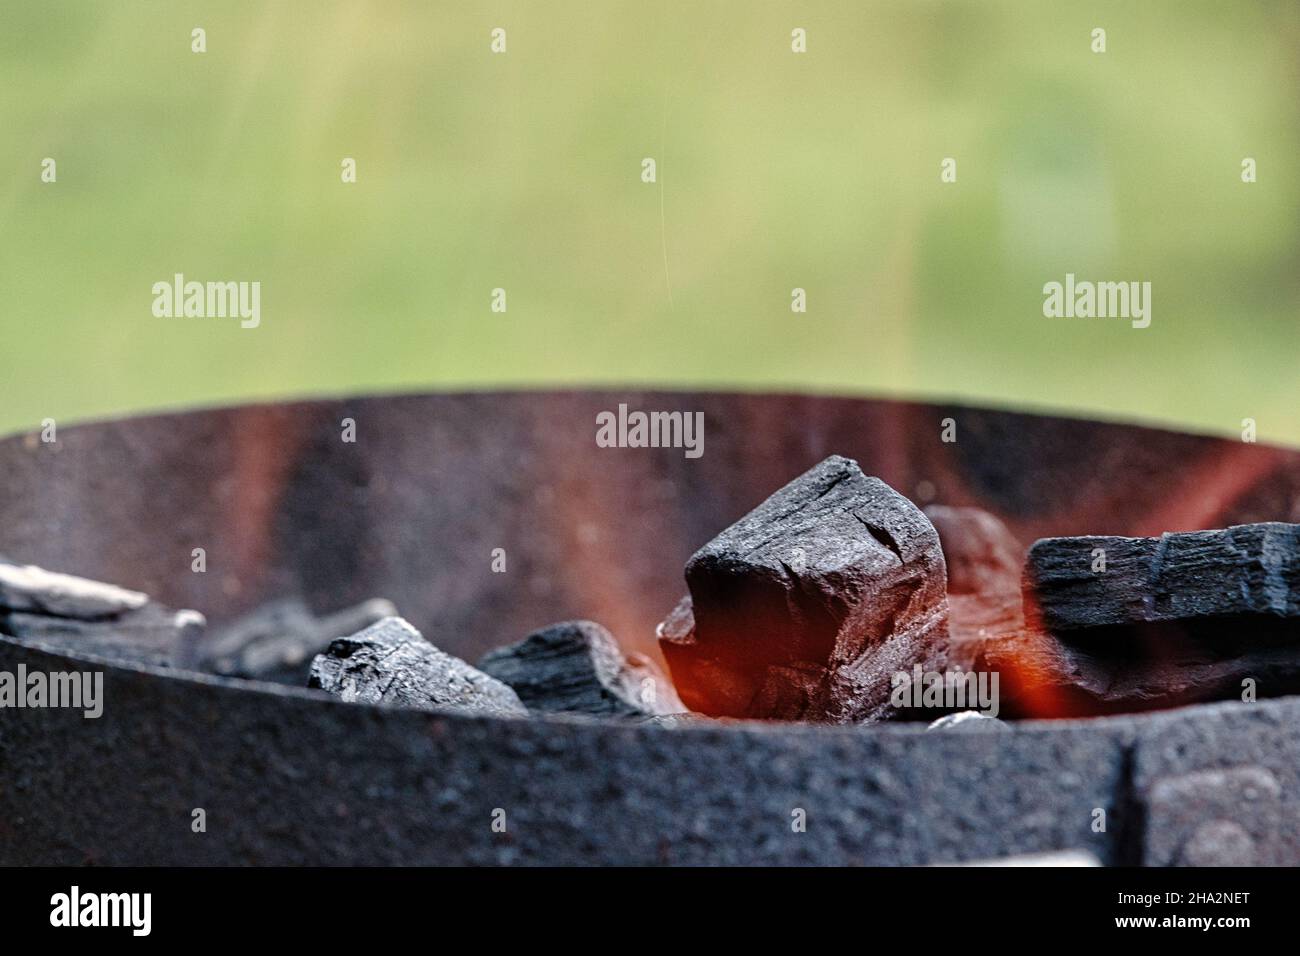 La quema de carbón vegetal listo para la barbacoa. Barbacoa Fotografía de  stock - Alamy